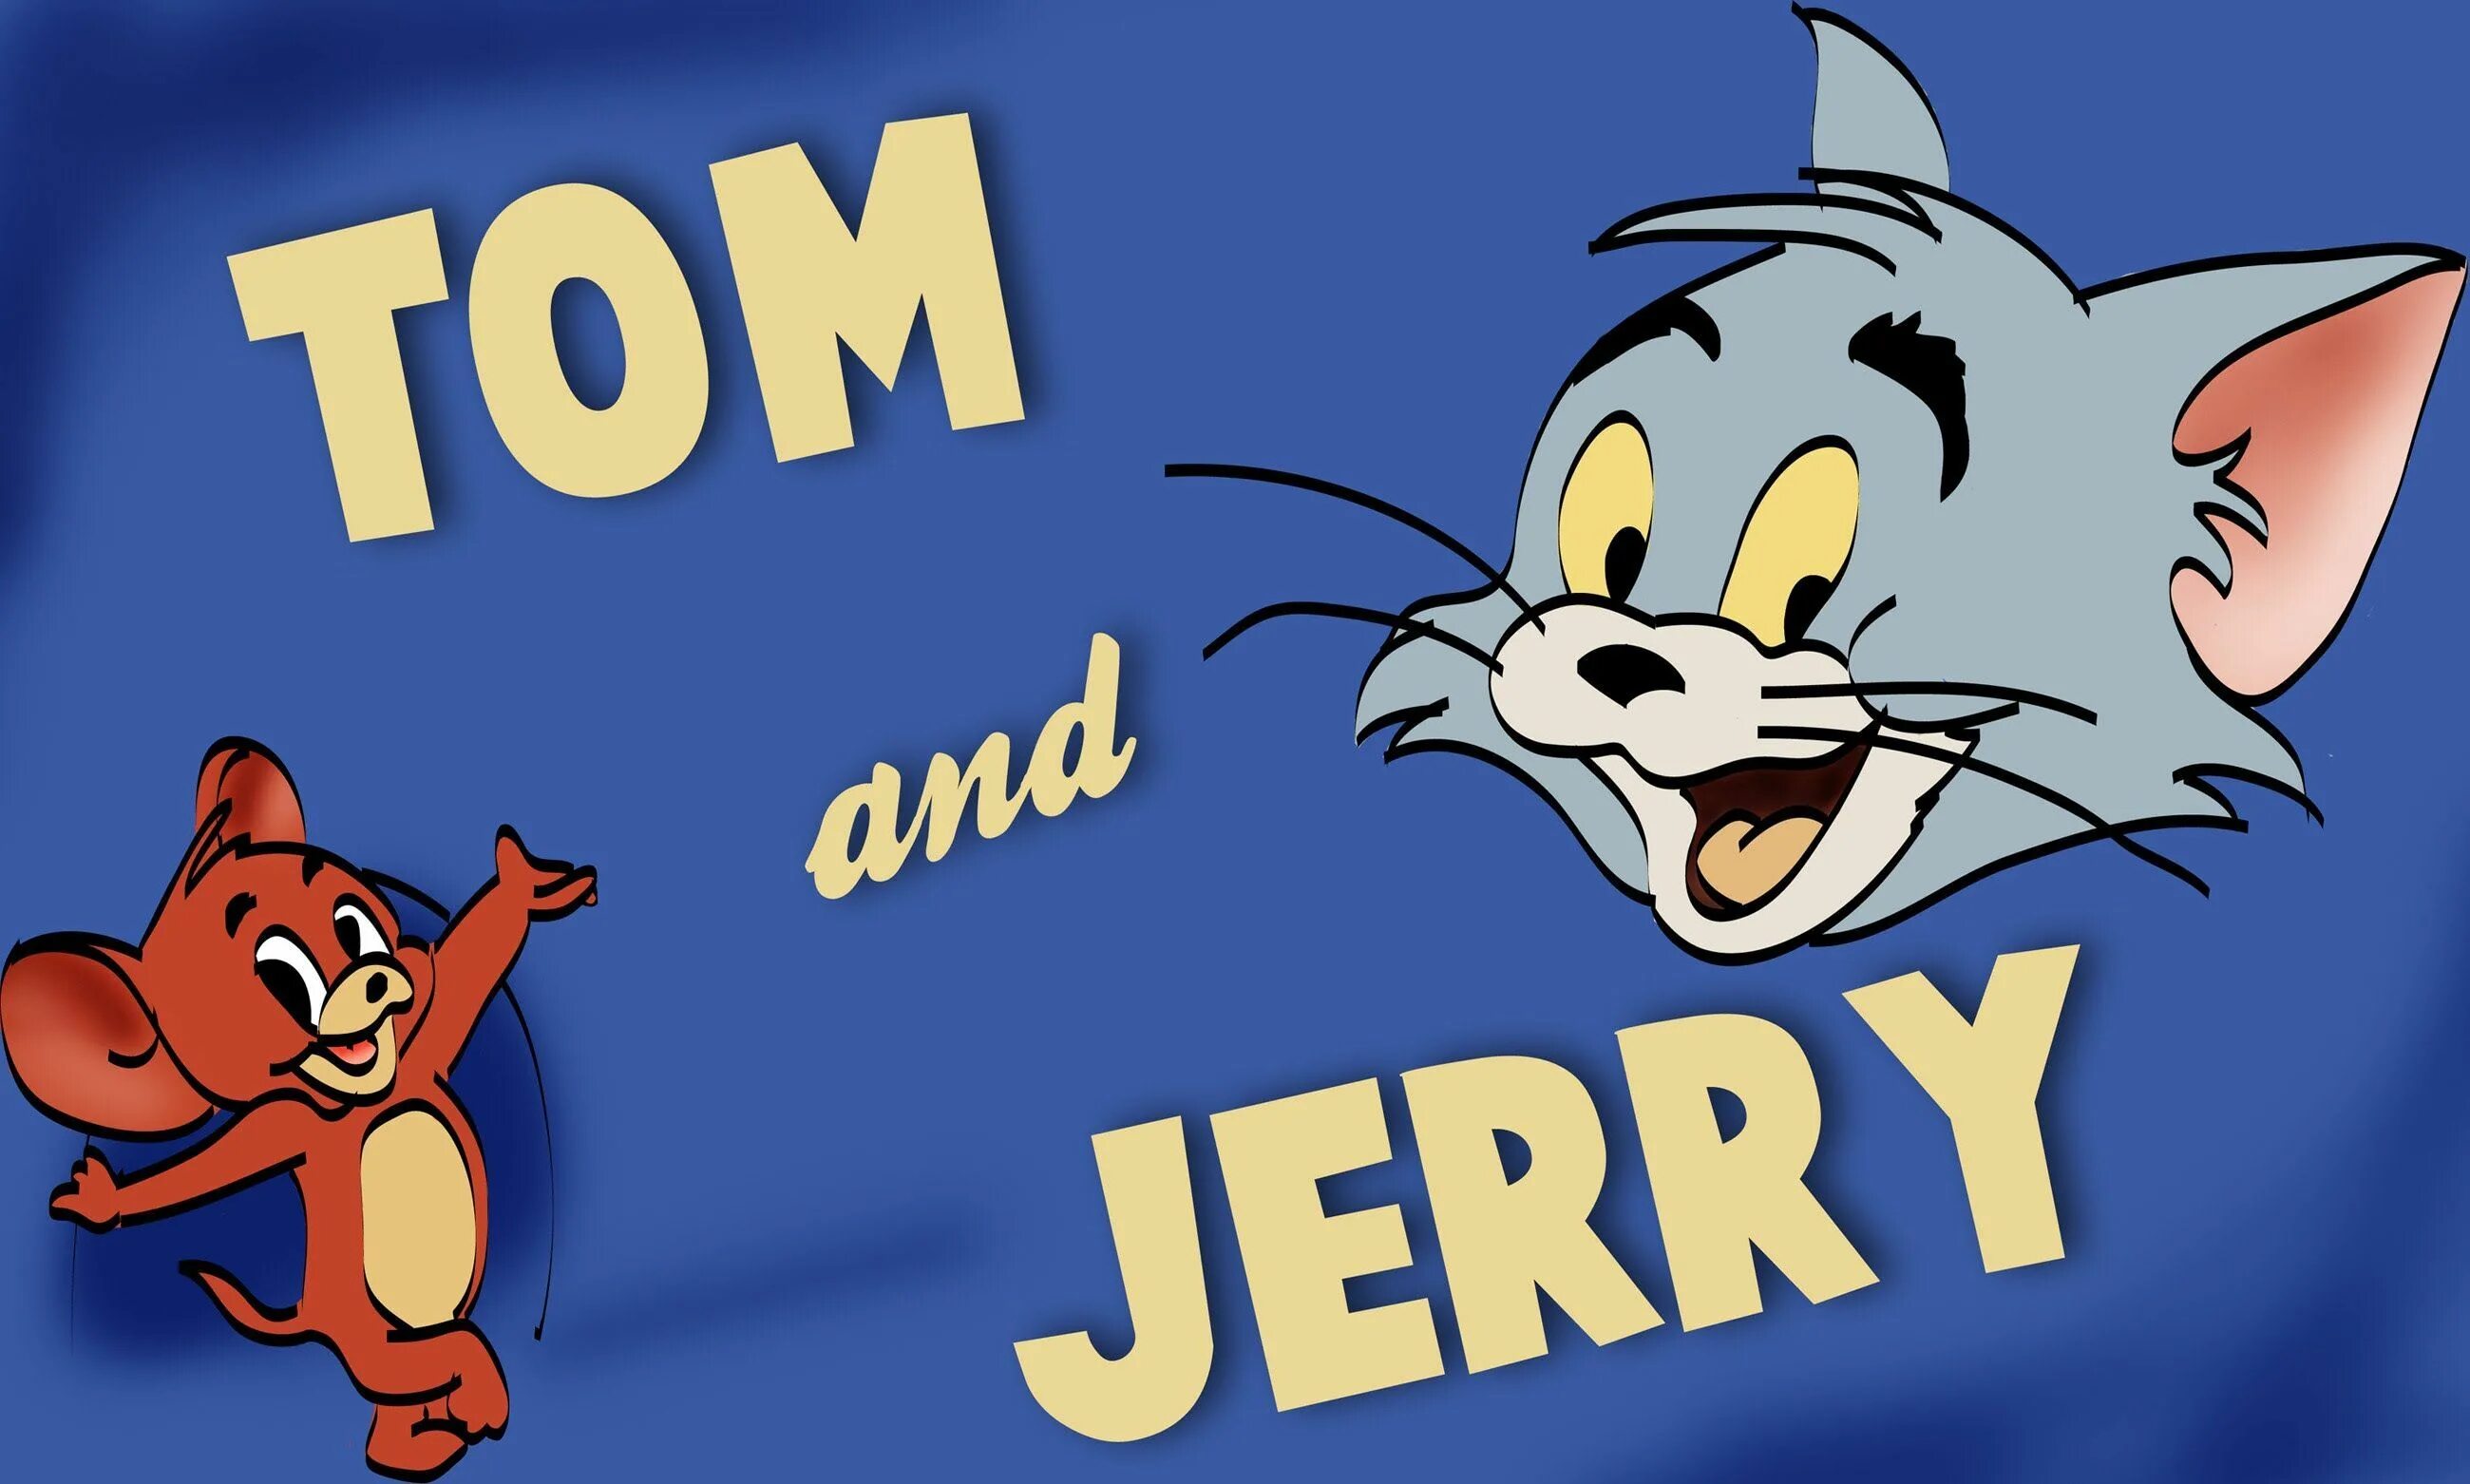 Том 1 ю. Tom and Jerry. Том и Джерри обложка мультфильма. NJV B LKTHB. Том и Джерри картинки.